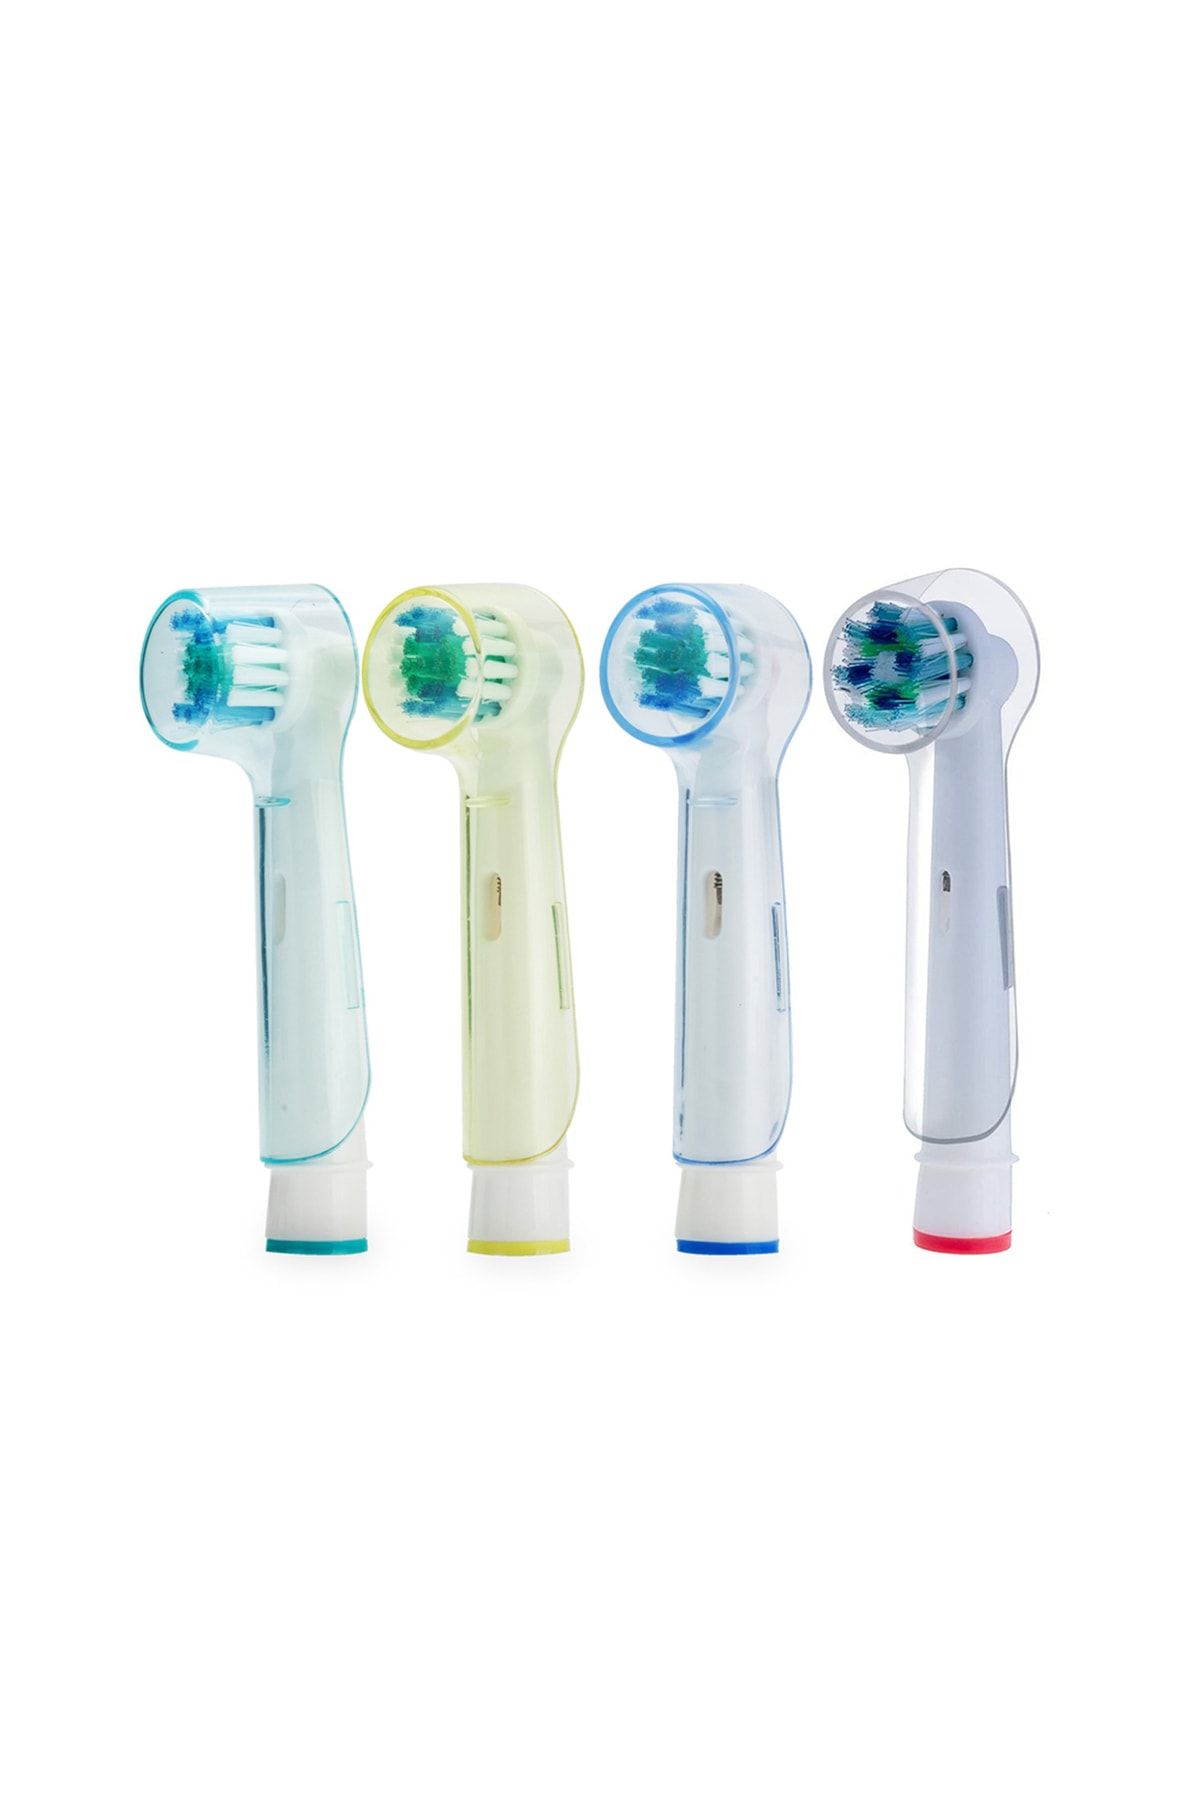 Kyver Oral B Şarjlı Ve Pilli Diş Fırçaları Ile Uyumlu Yedek Başlık Koruyucu Kapak Renkli 4’lü Set